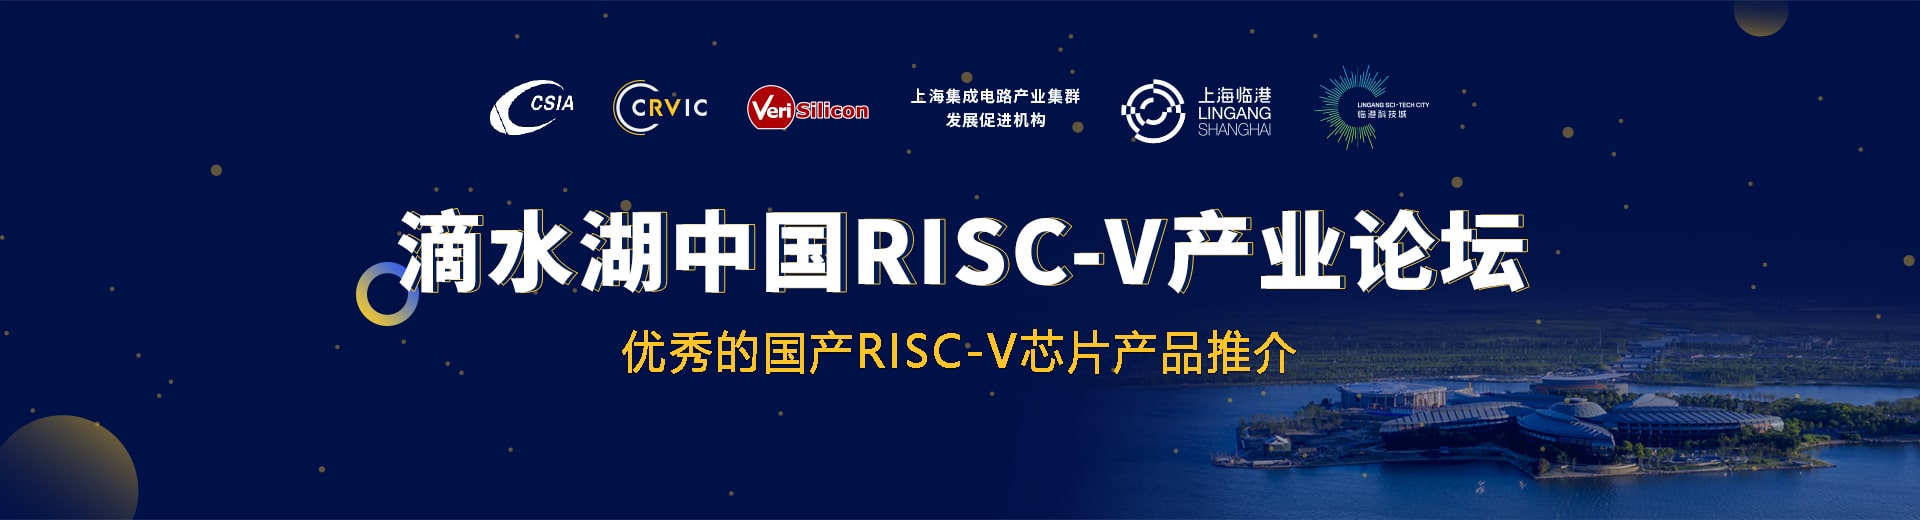 首届滴水湖中国RISC-V产业论坛专题